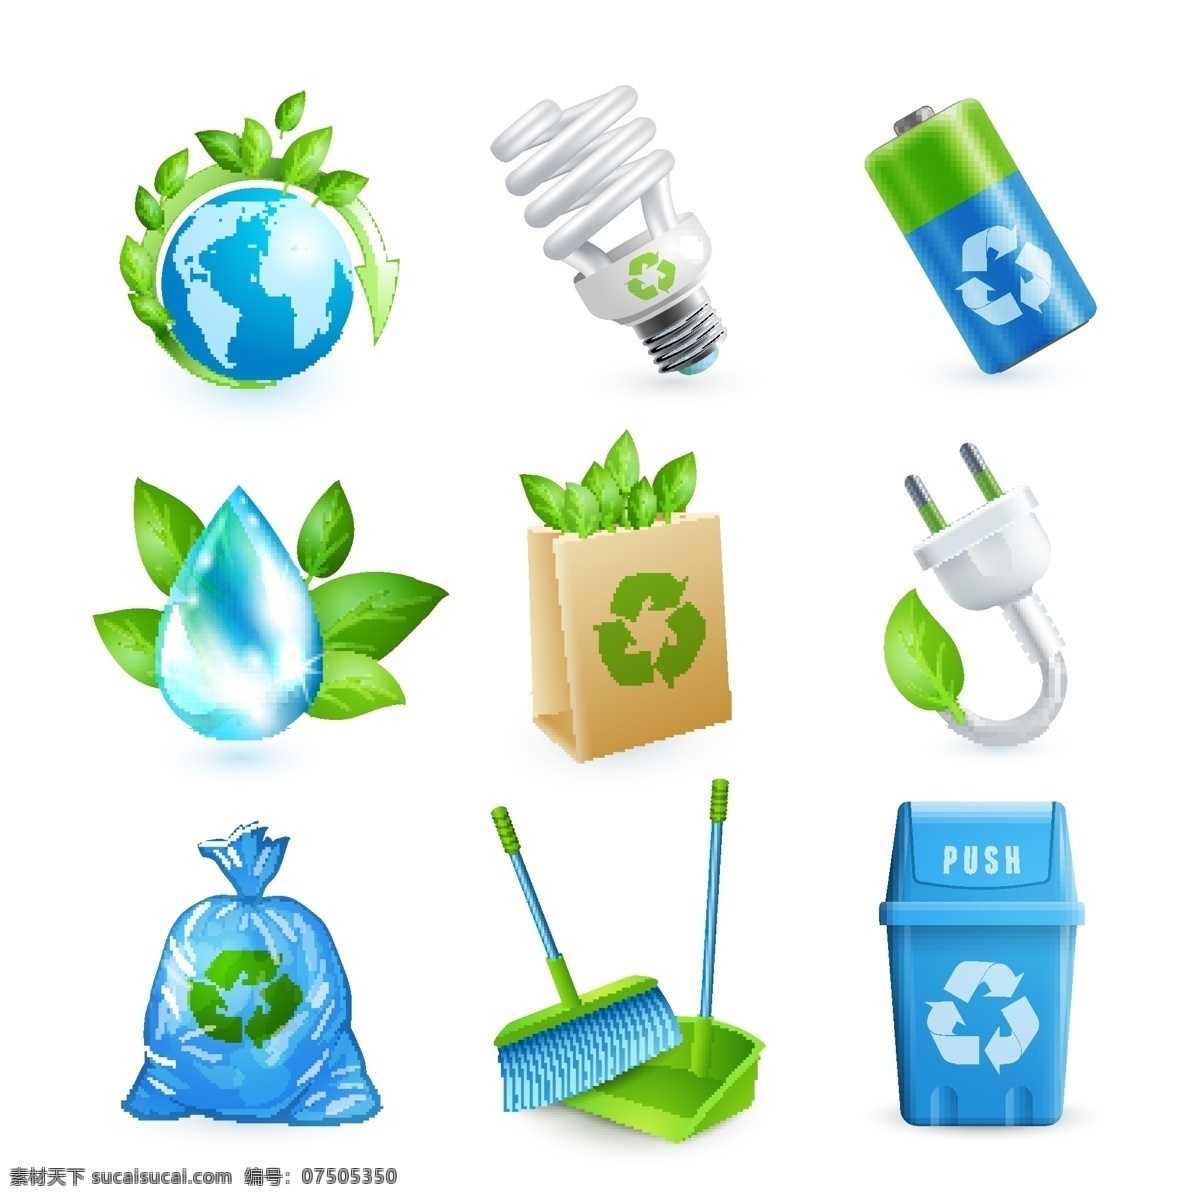 绿色环保 图标 矢量素材 水滴 插头 垃圾箱 绿叶 树叶 eps格式